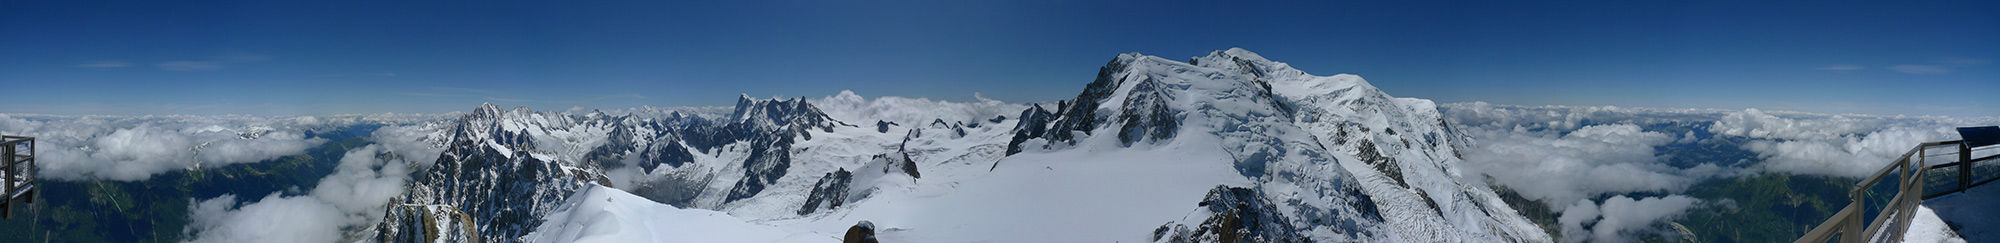 Фотообои панорама горных вершин снежные пики (nature-00277)